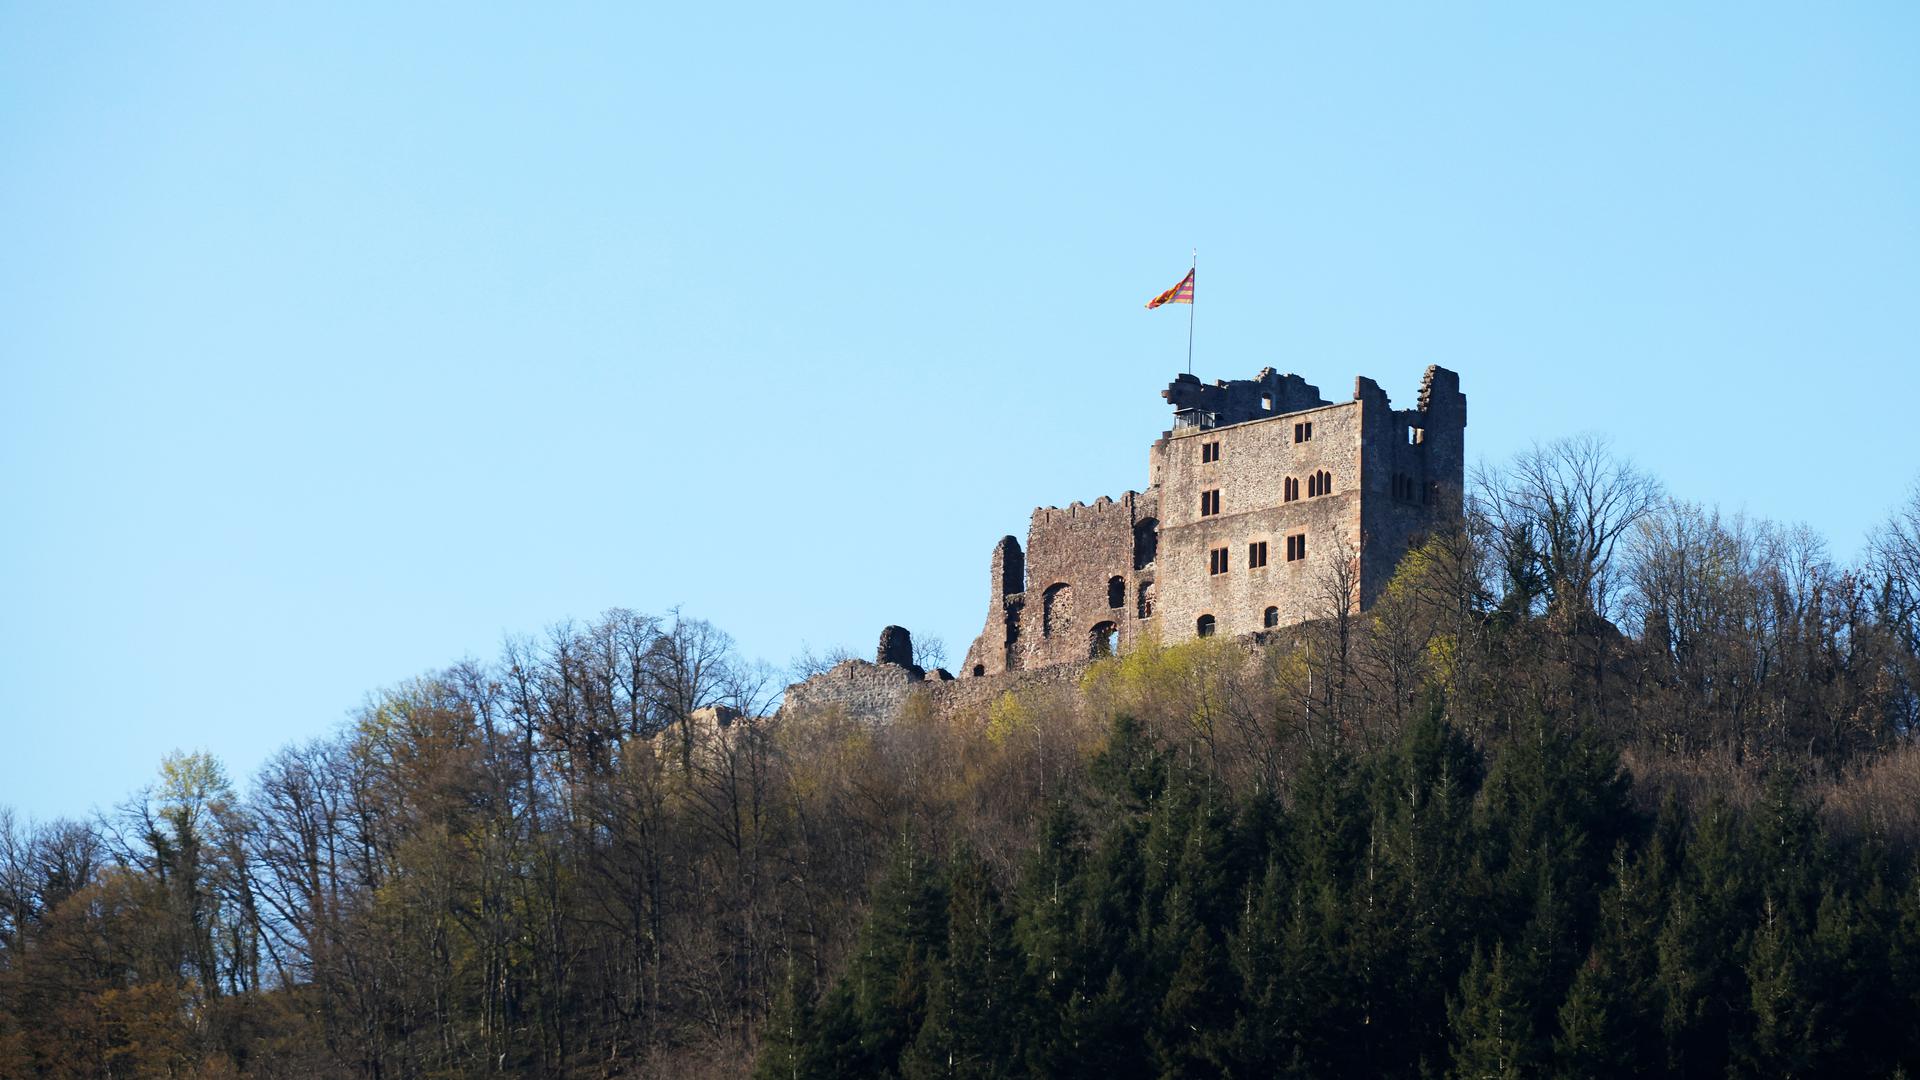 Die Burg Hohengeroldseck steht auf einem Berg oberhalb von Seelbach. Im Rahmen eines dreijährigen Projekts sollen in Zusammenarbeit mit 36 grenzüberschreitenden Partnern wissenschaftliche, kulturelle, kulturhistorische, touristische und bürgerschaftliche Initiativen vereint werden, um die Burgen auf beiden Seiten des Oberrhein zu fördern und aufzuwerten. 